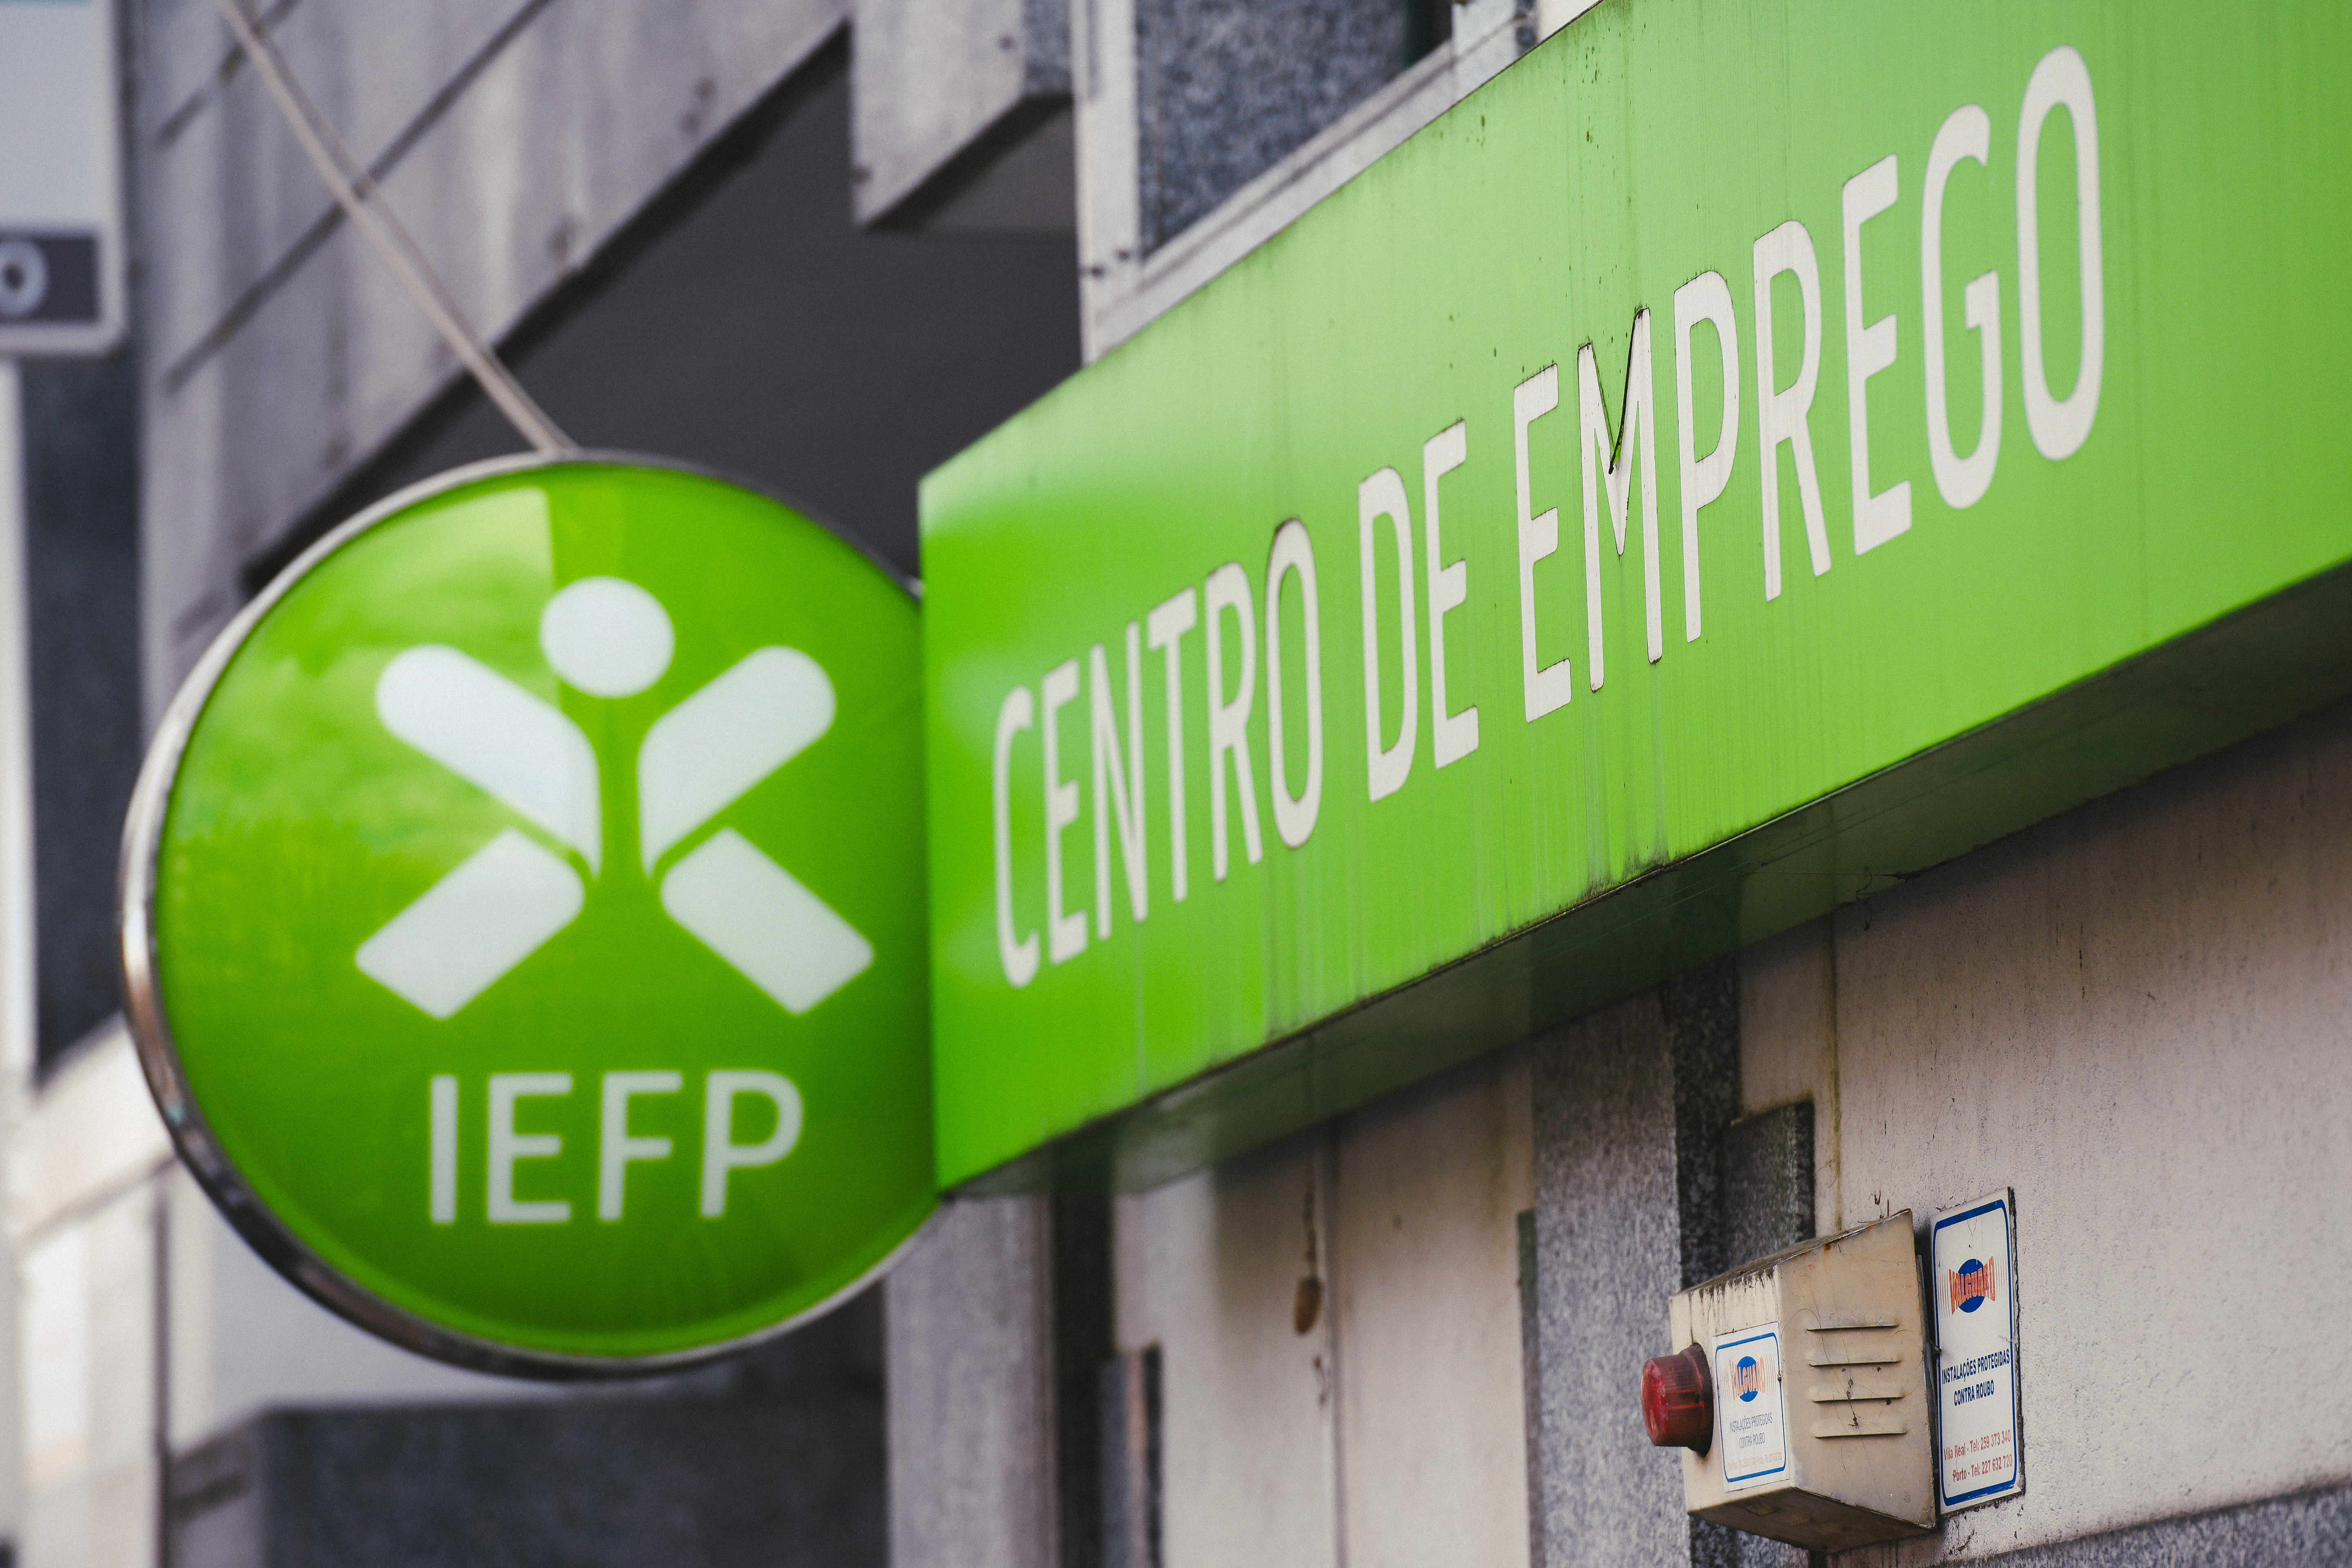 IEFP Centro de Emprego